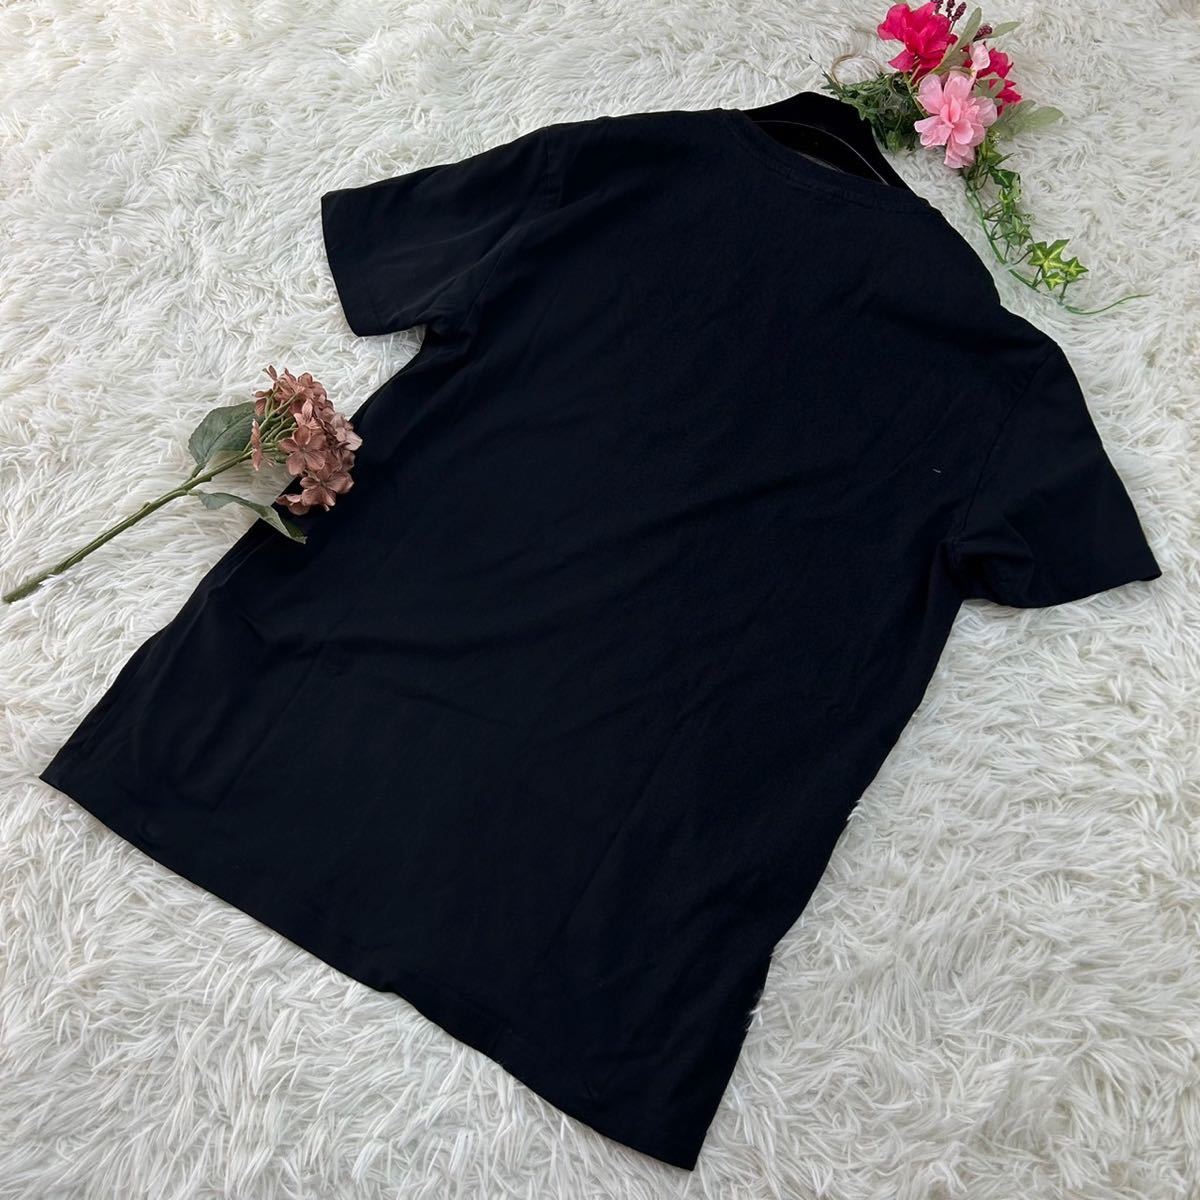 ディーゼル メンズ ブラック 黒 大きいサイズ ワンポイント 半袖 Tシャツ カットソー 人気デザイン 送料無料 _画像4